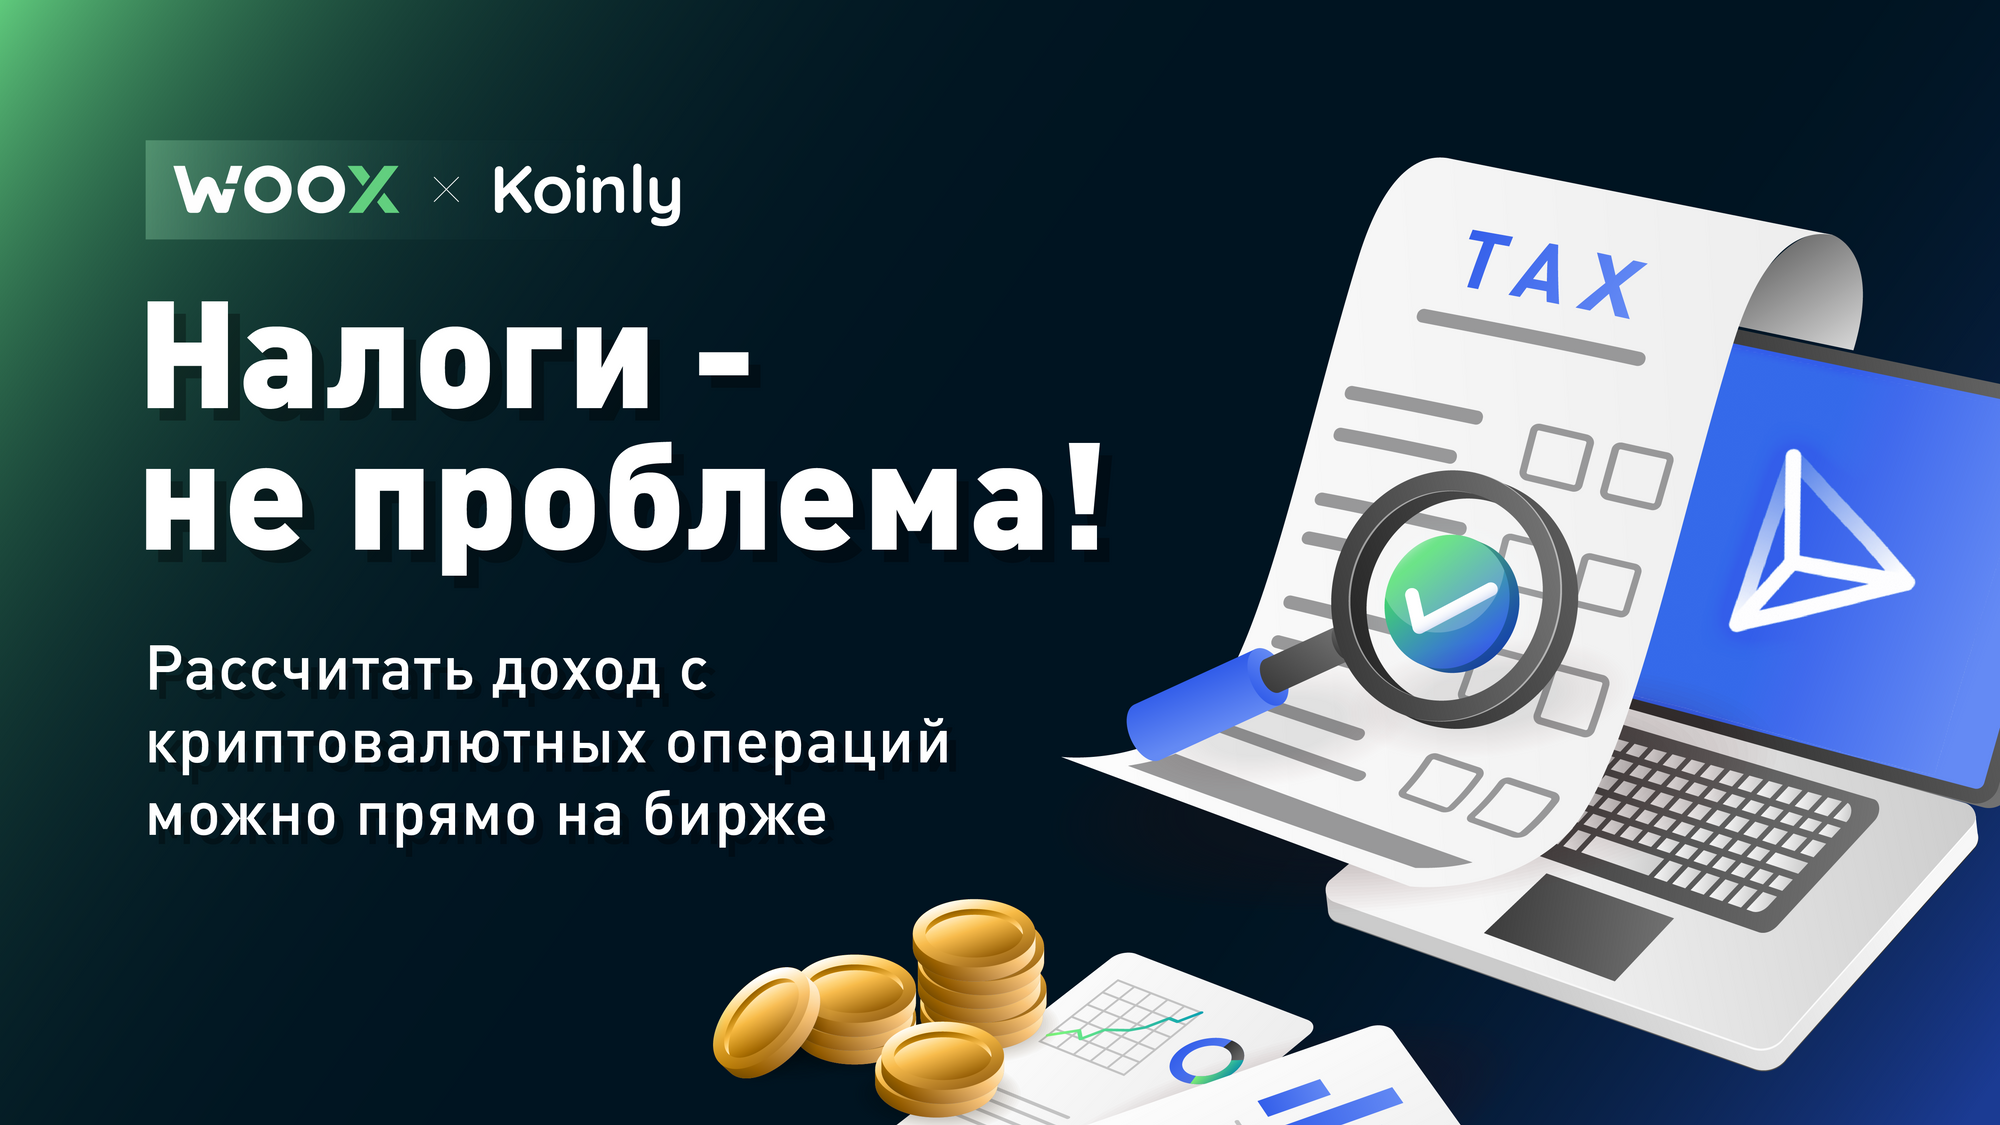 Пользователи WOO X могут рассчитать налоги на криптовалютную прибыль с помощью Koinly